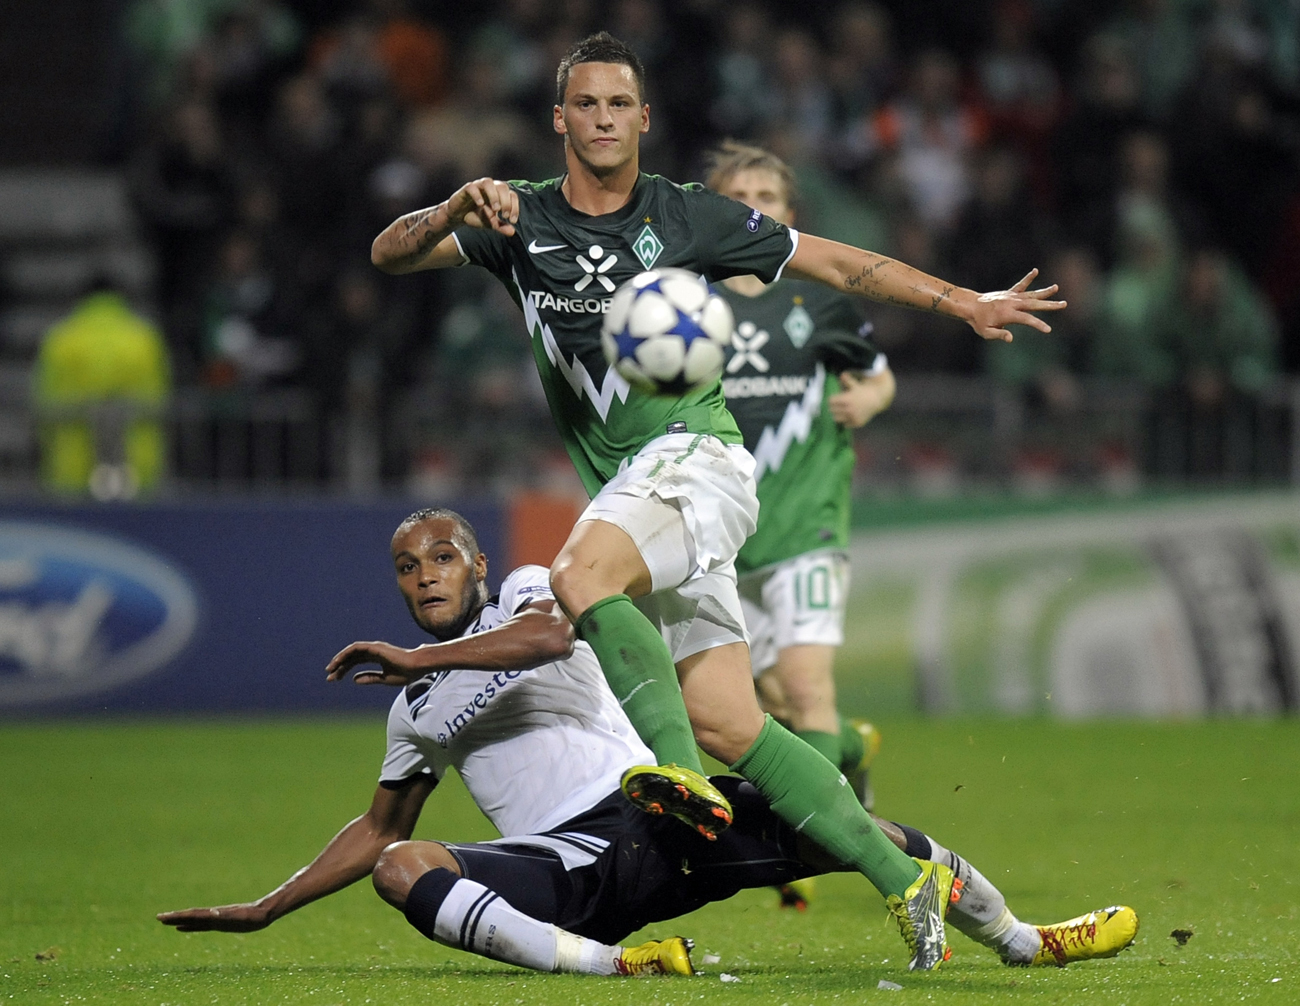 Werder Bremens Marco Arnautovic busade med hunden och vred till sitt knä. Nu riskerar han att missa resten av säsongen i Bundesliga.